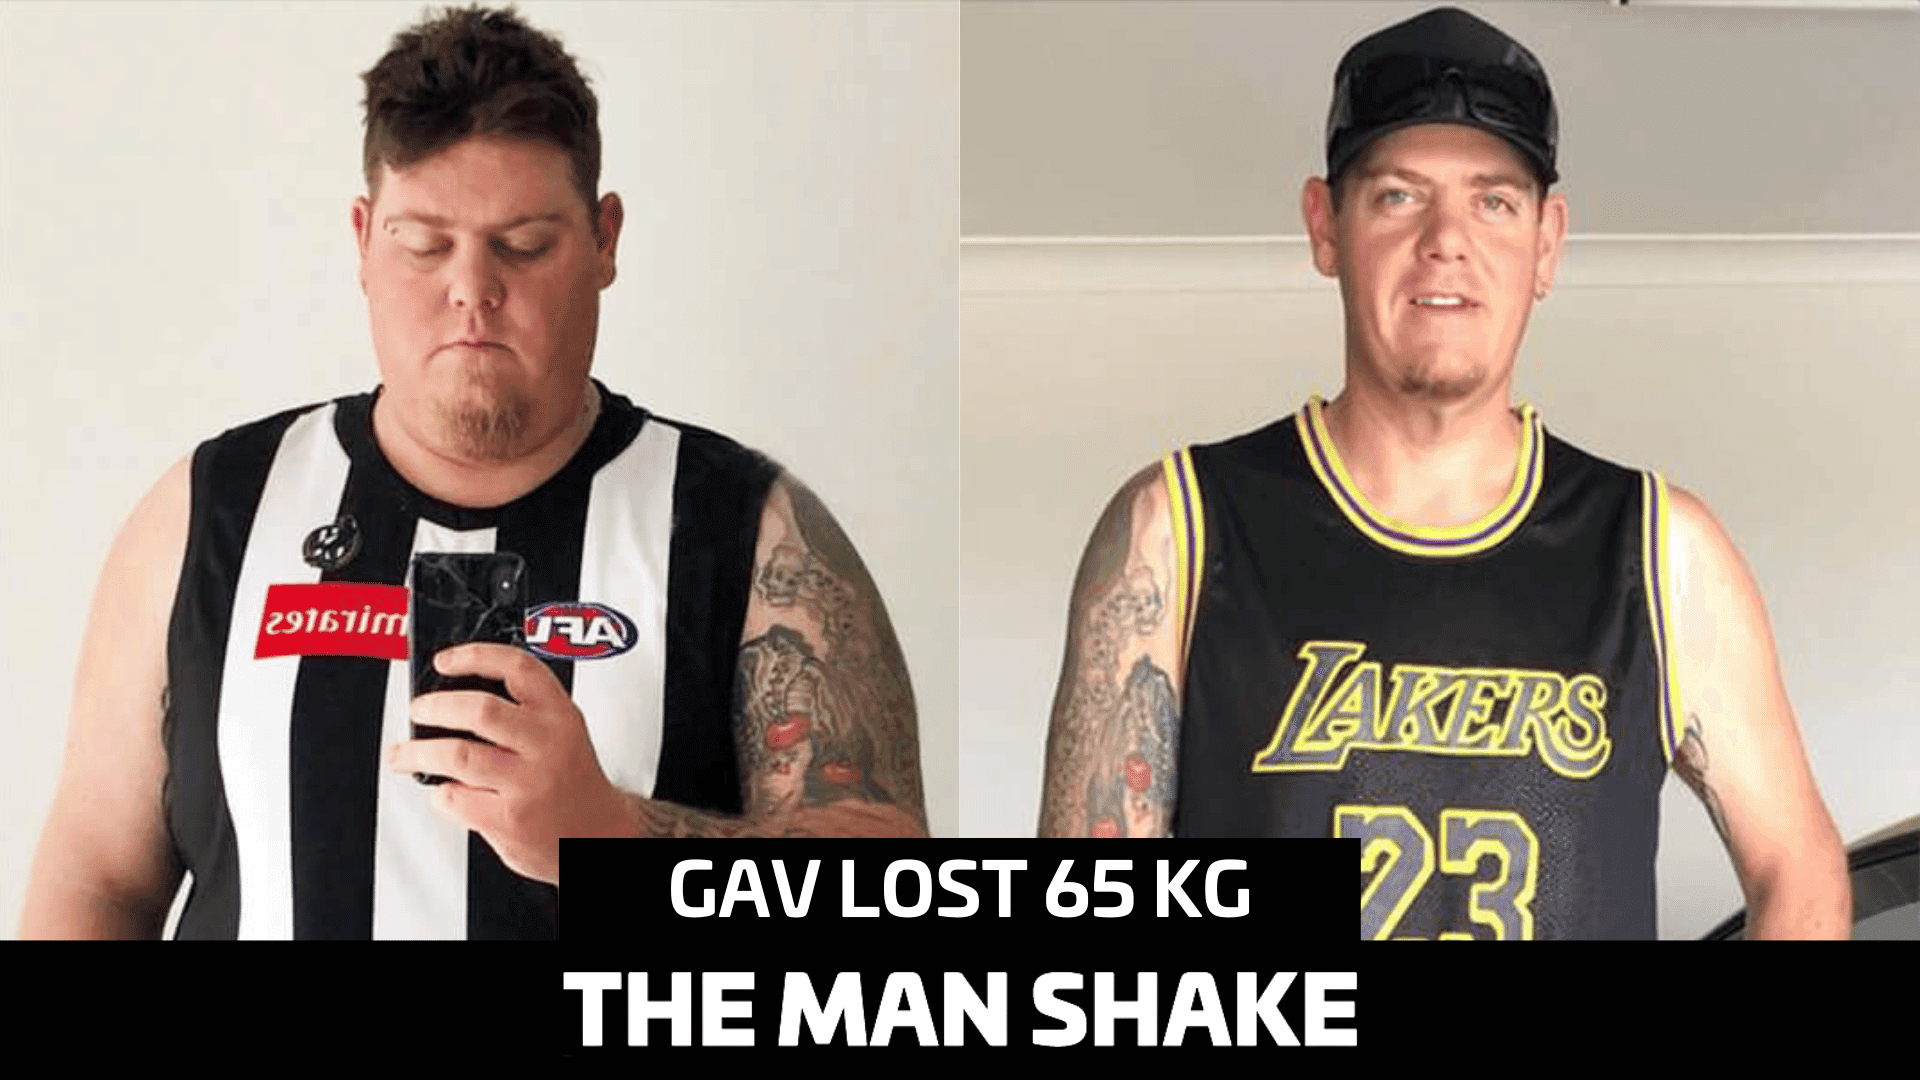 Gav lost an incredible 65kg!